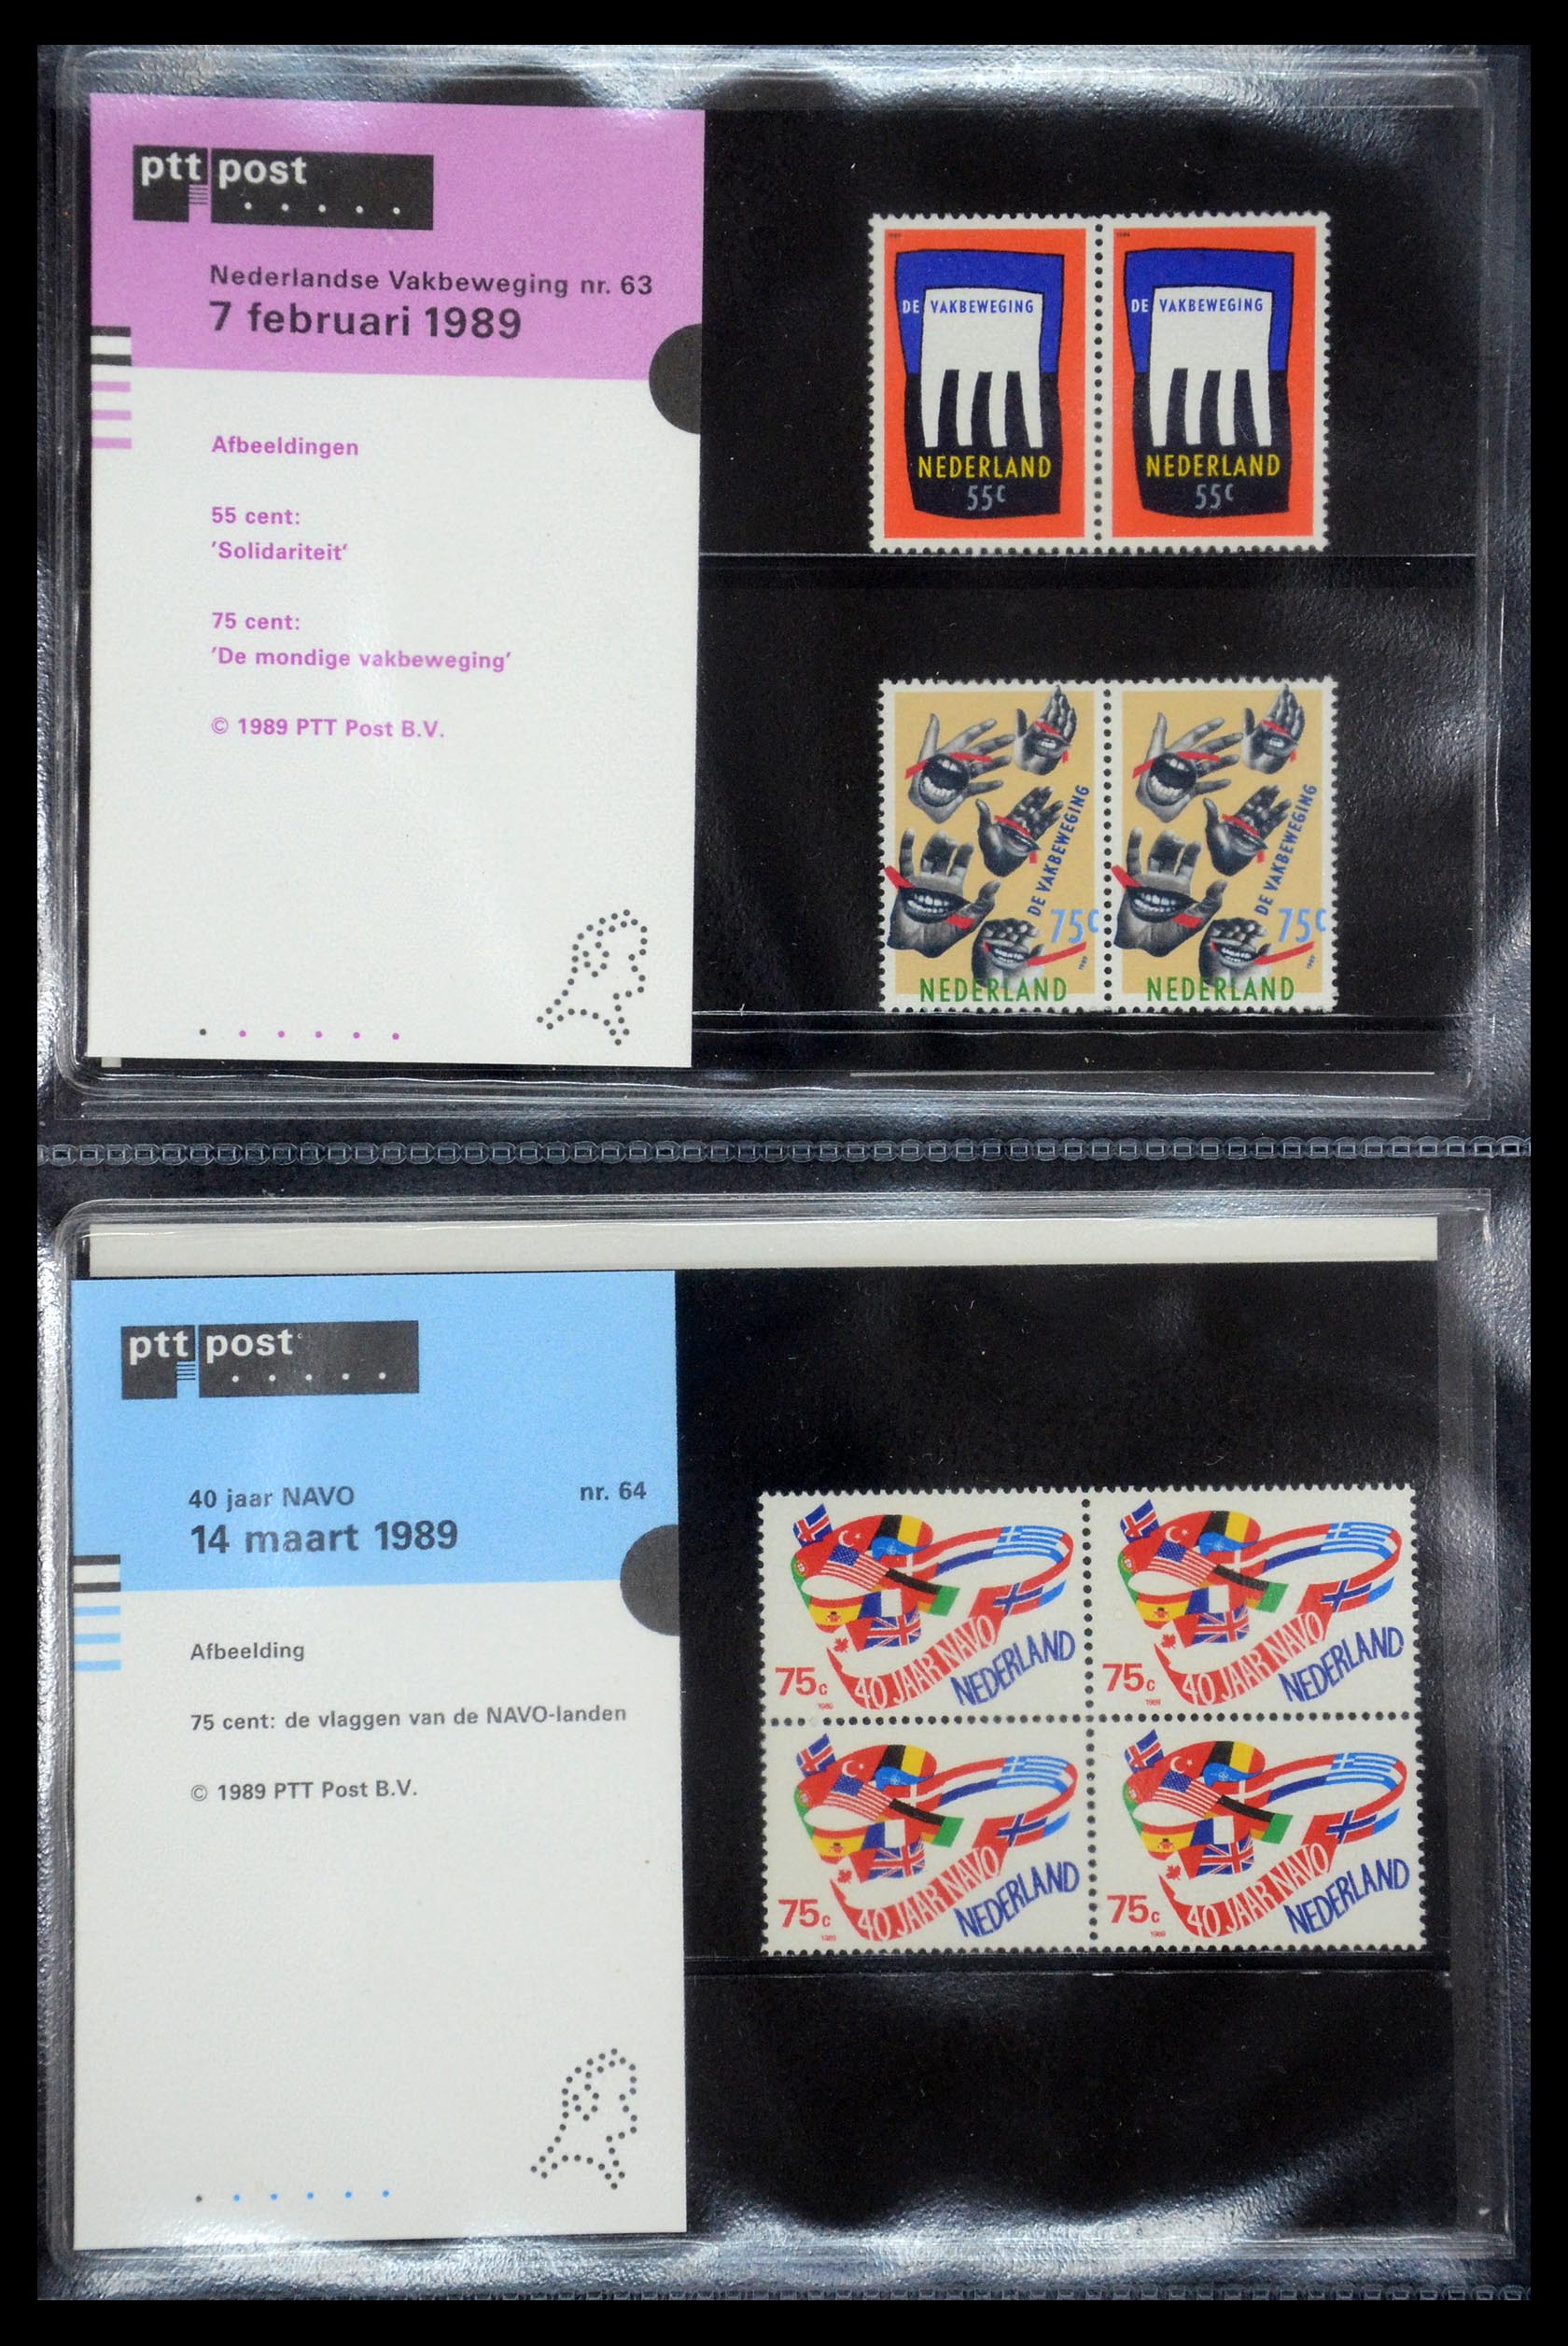 35187 032 - Stamp Collection 35187 Netherlands PTT presentation packs 1982-2019!